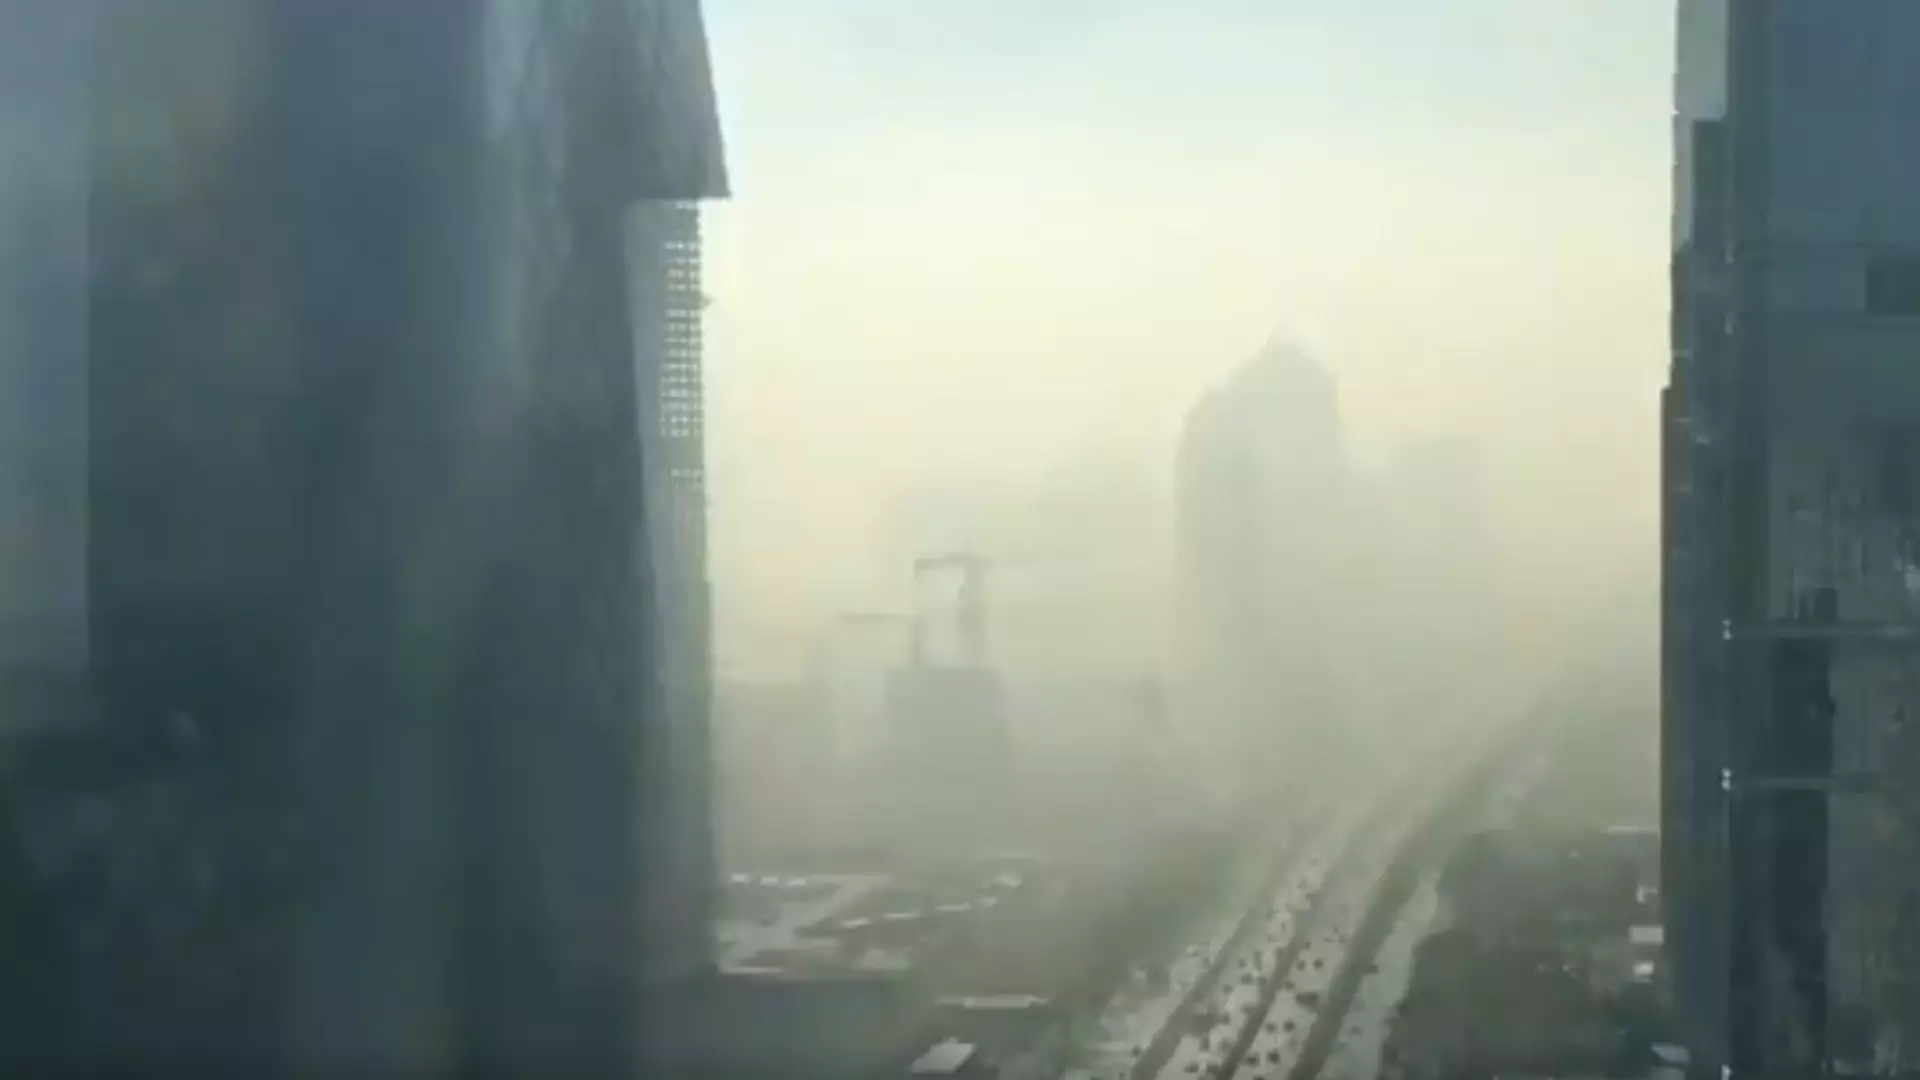 Tak właśnie wygląda smog i po tym filmie mamy ochotę uciec z miasta na zawsze